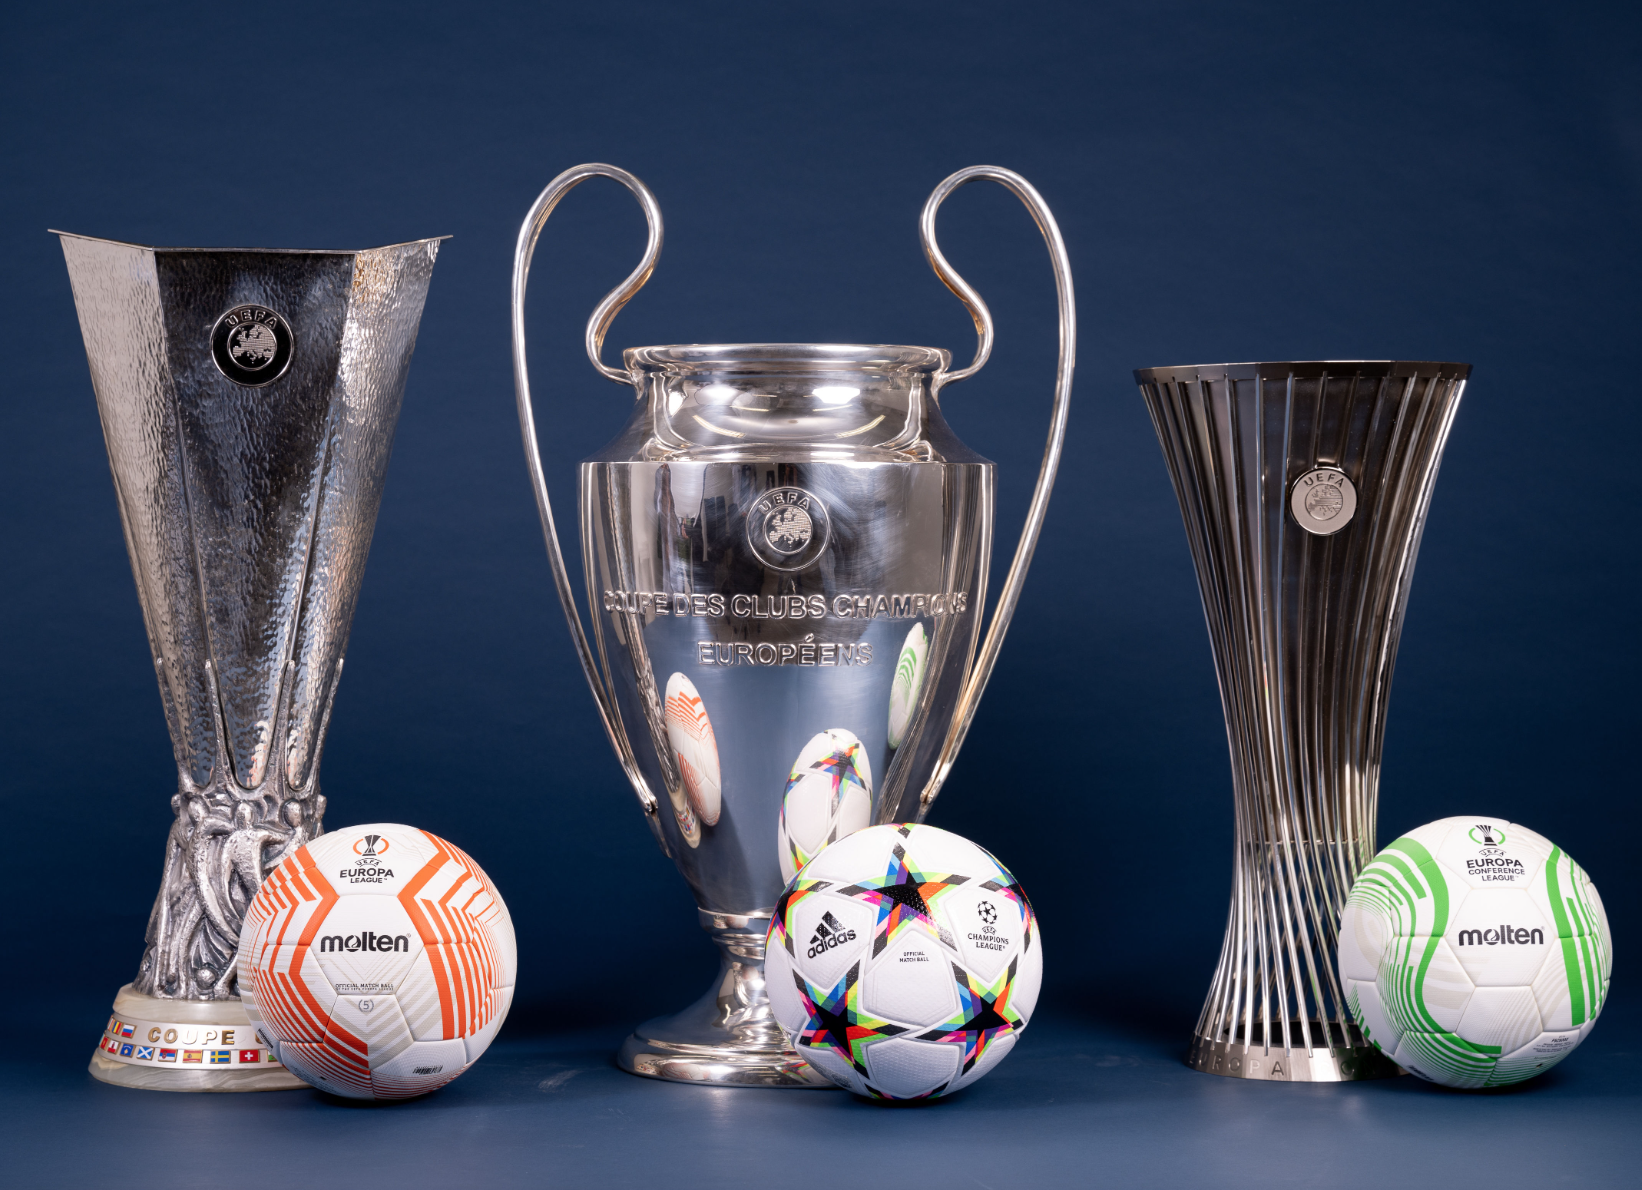 UEFA Champions League & Lịch sử các nhà vô địch?